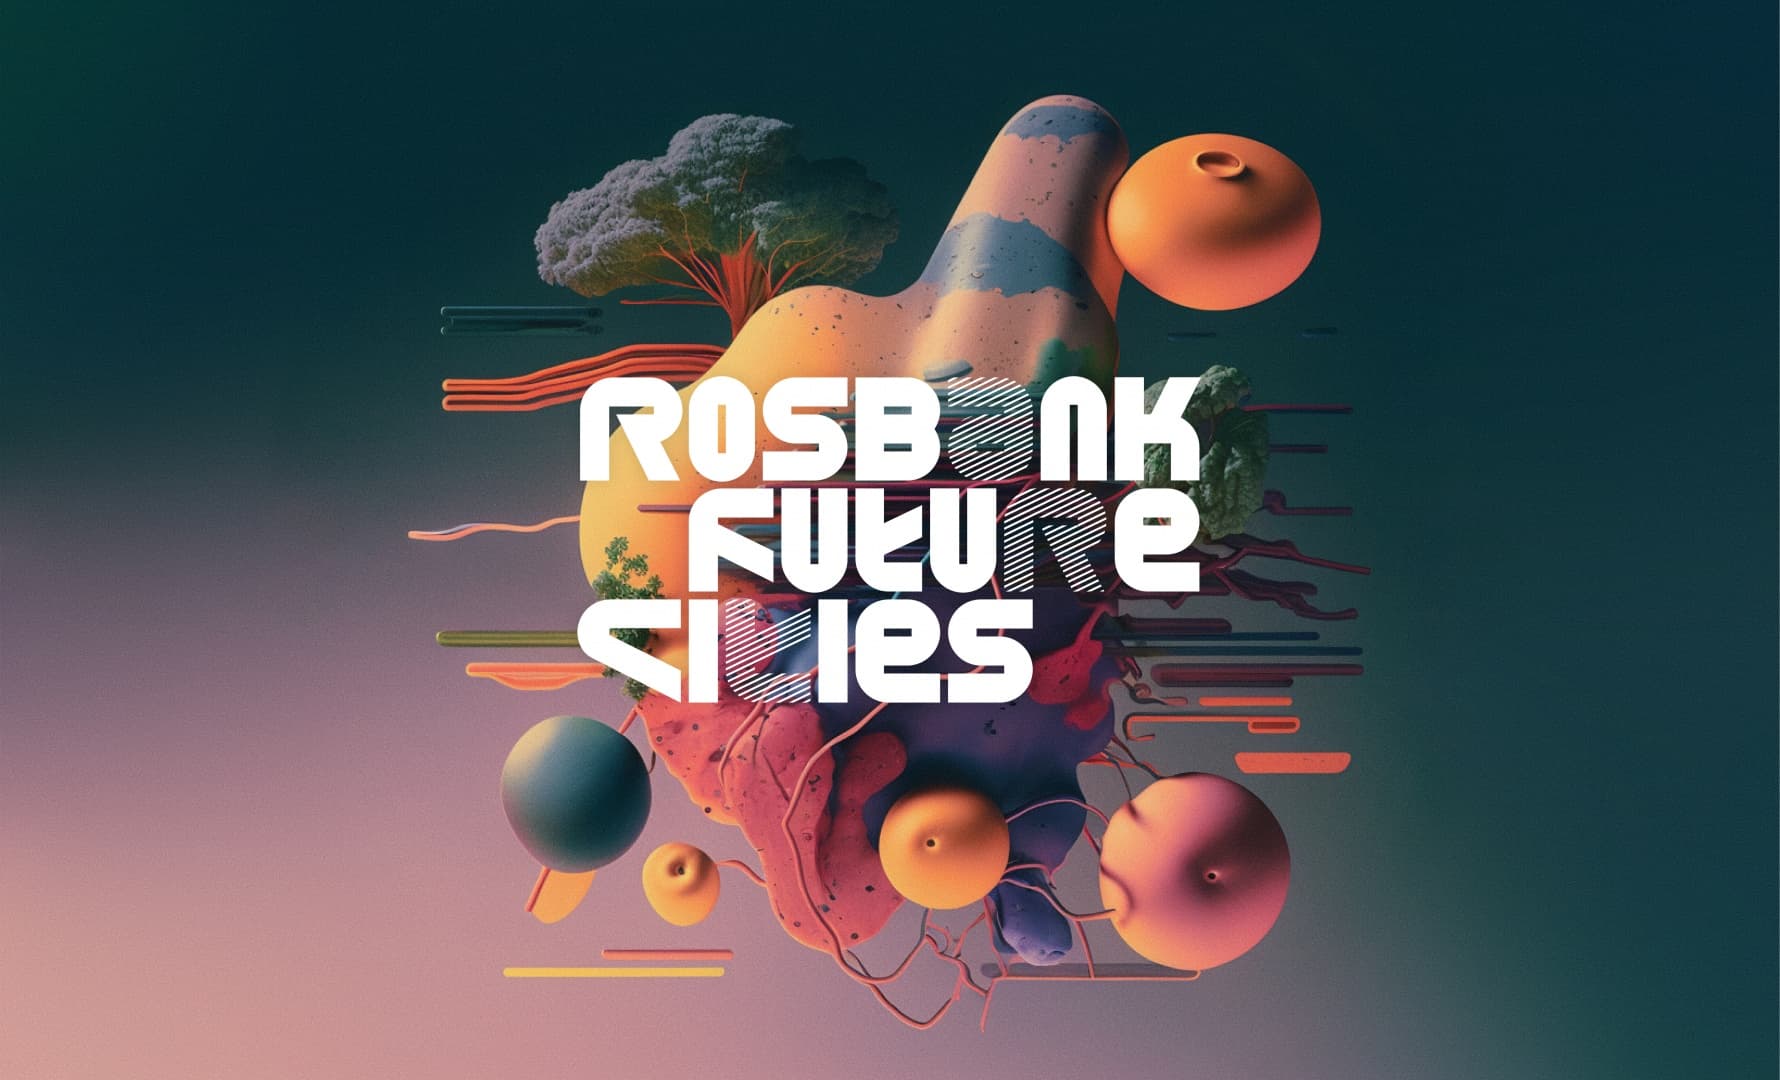 Фестиваль Rosbank Future Cities проводит опен-колл для цифровых художников